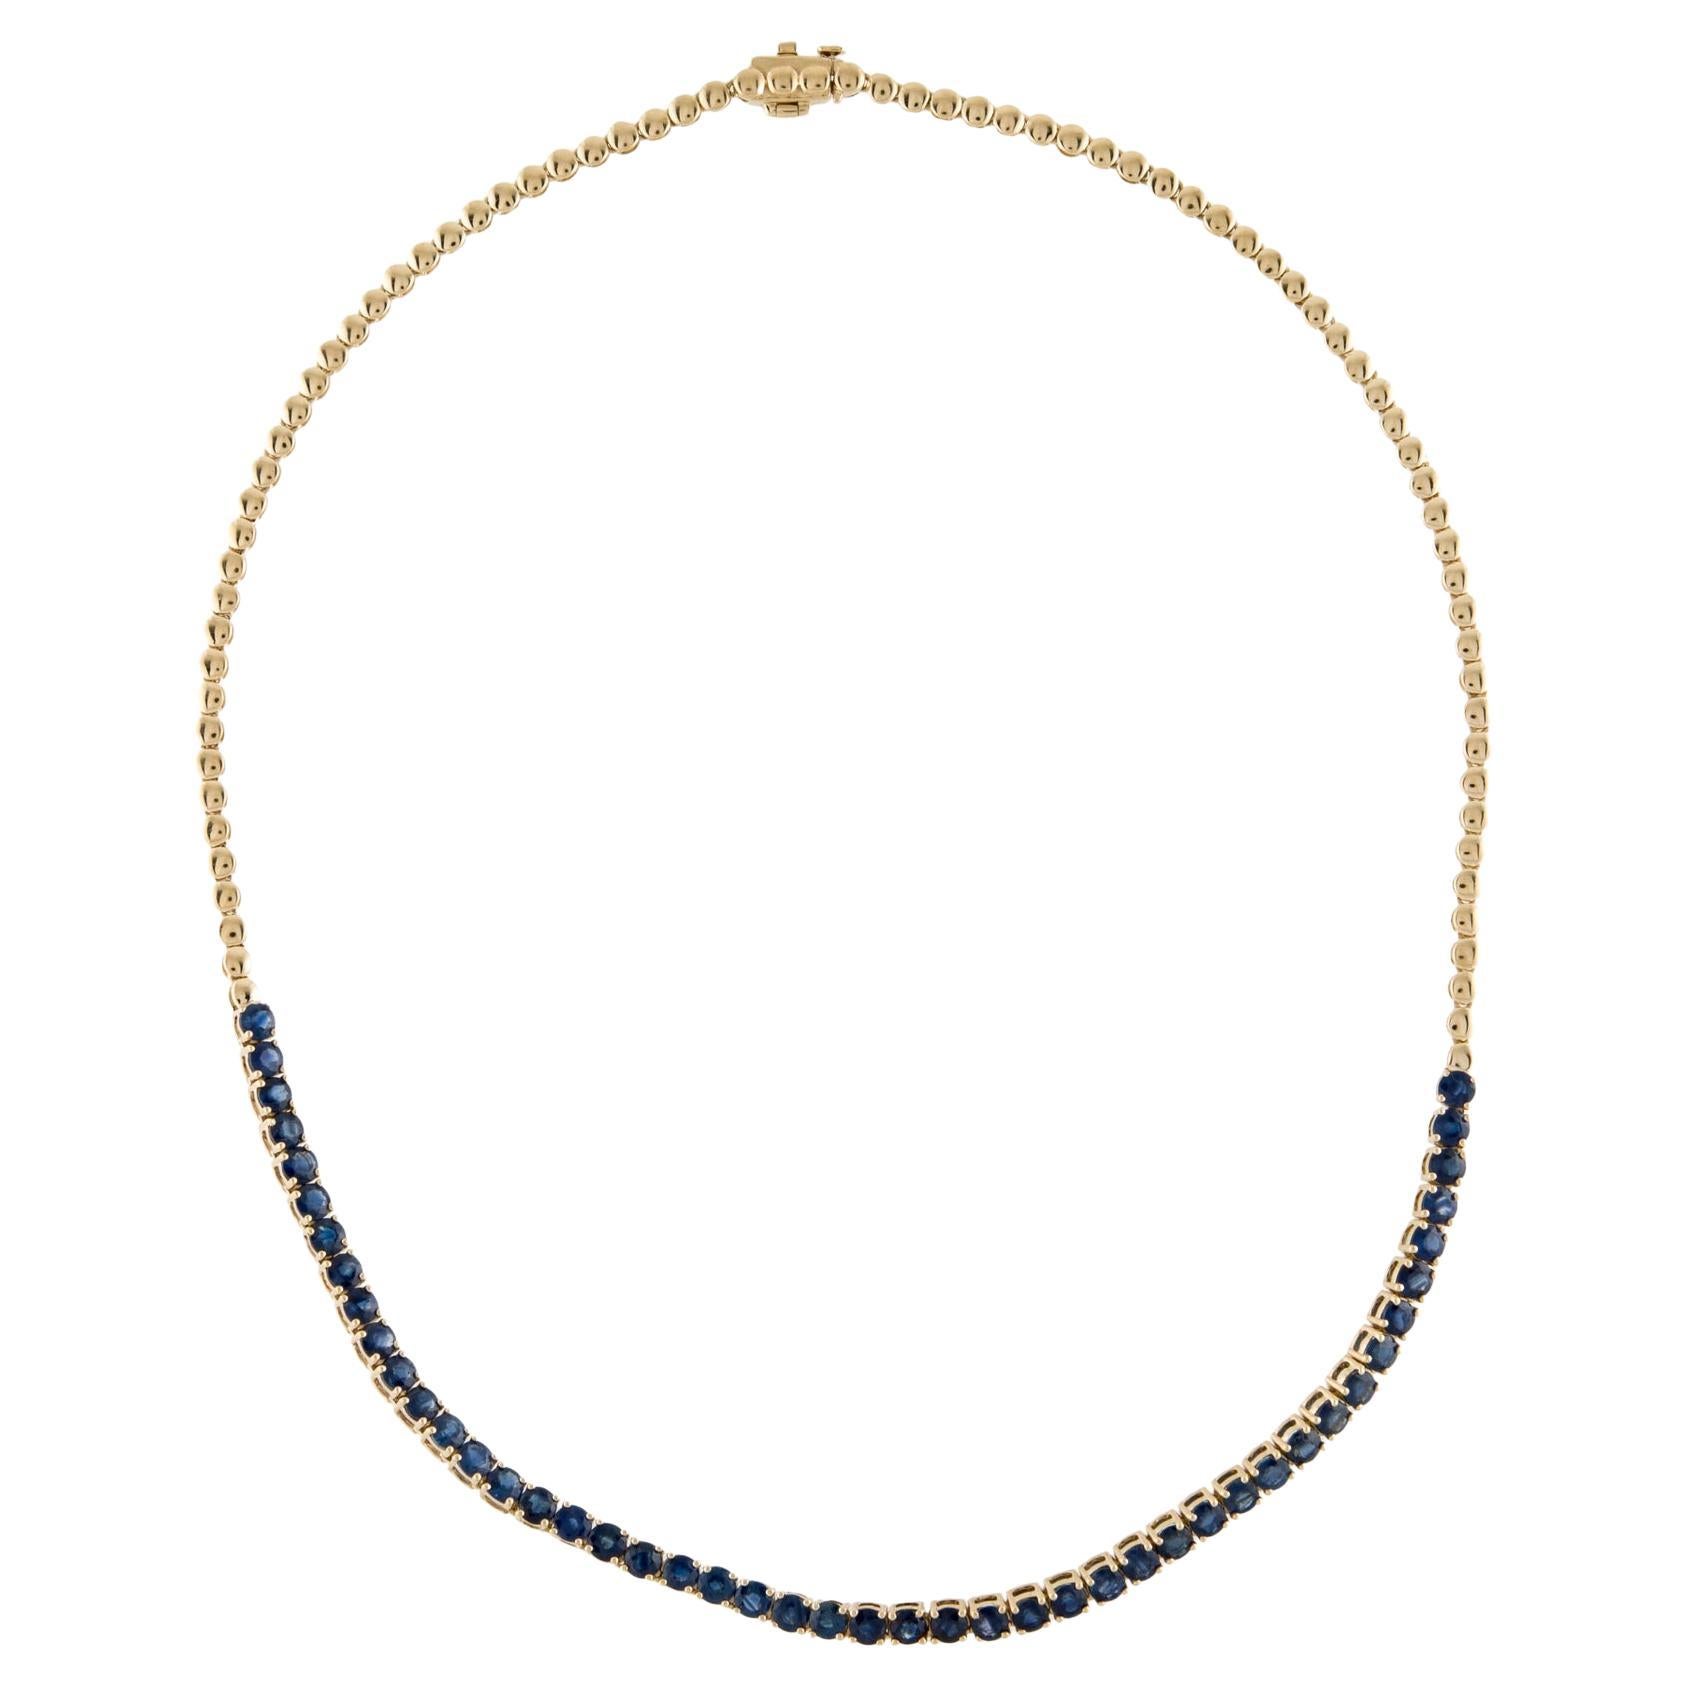 14K Saphir Halsband Halskette 10.71ctw - Exquisite Statement-Schmuck für Elegance